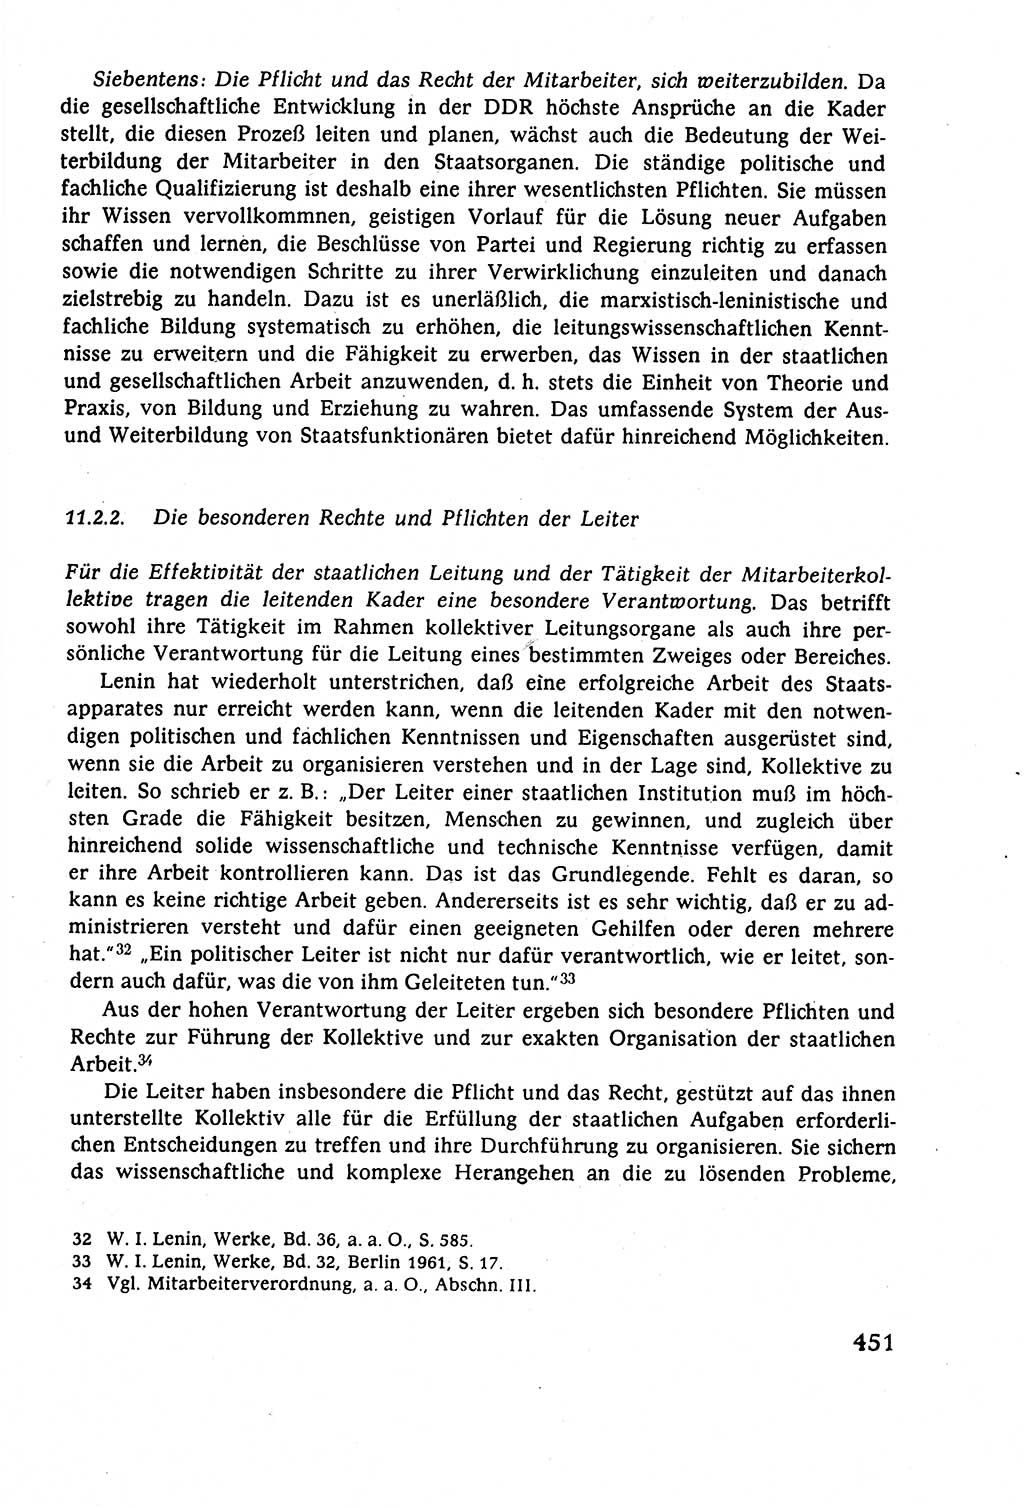 Staatsrecht der DDR (Deutsche Demokratische Republik), Lehrbuch 1977, Seite 451 (St.-R. DDR Lb. 1977, S. 451)